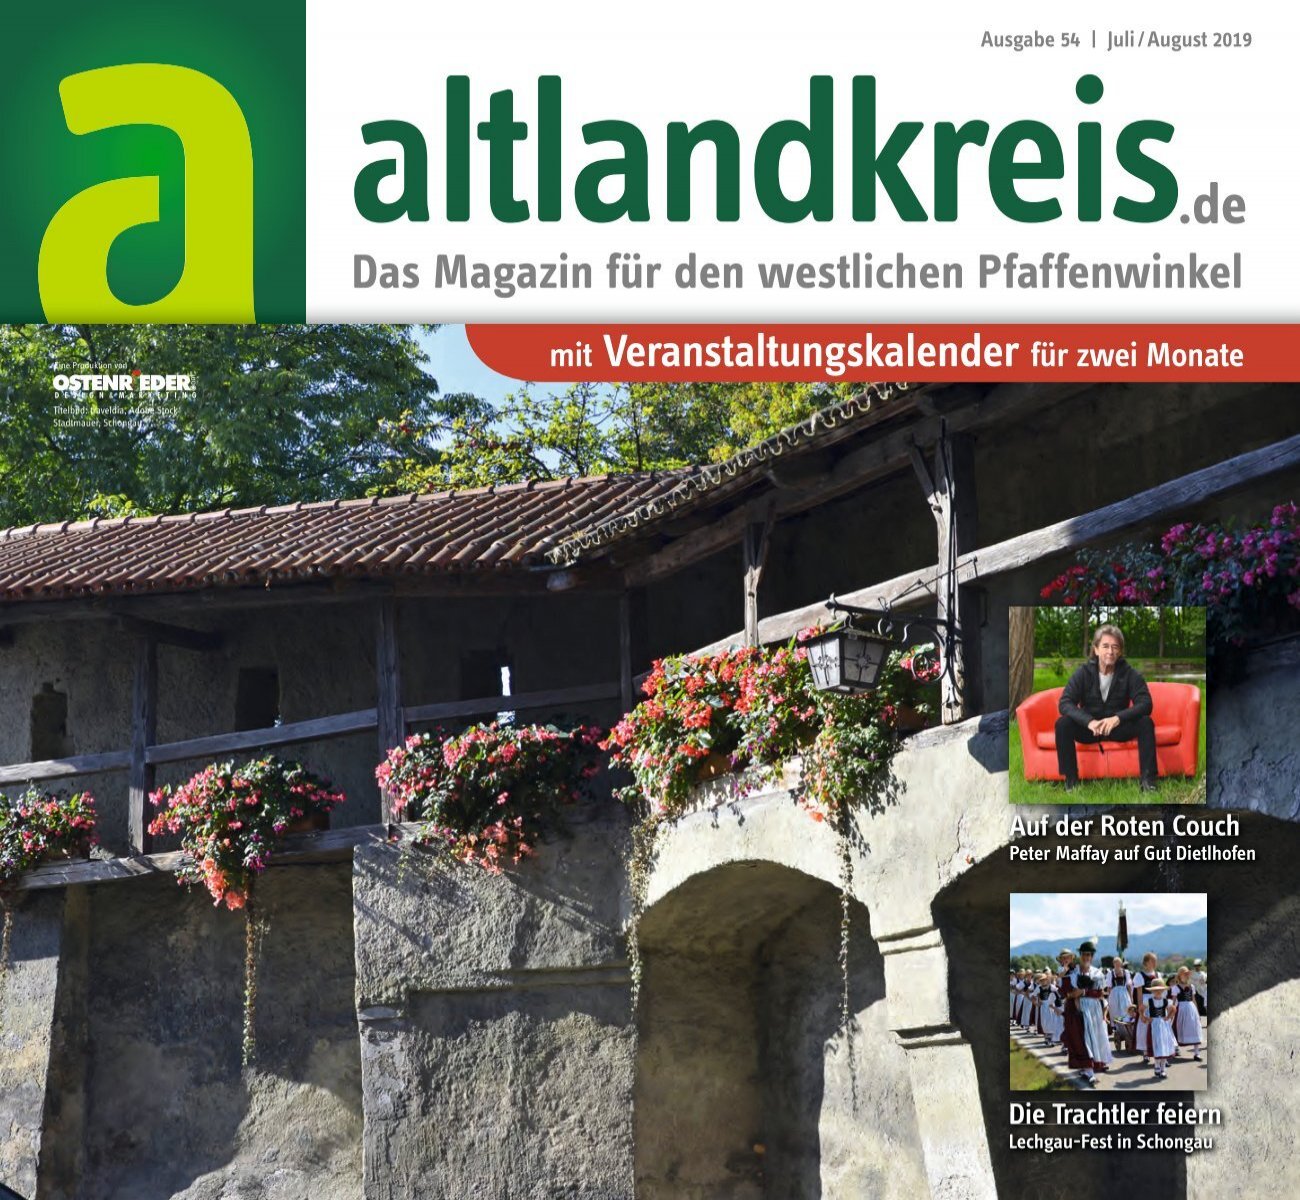 Altlandkreis Ausgabe Juli August 2019 Das Magazin Fur Den Westlichen Pfaffenwinkel